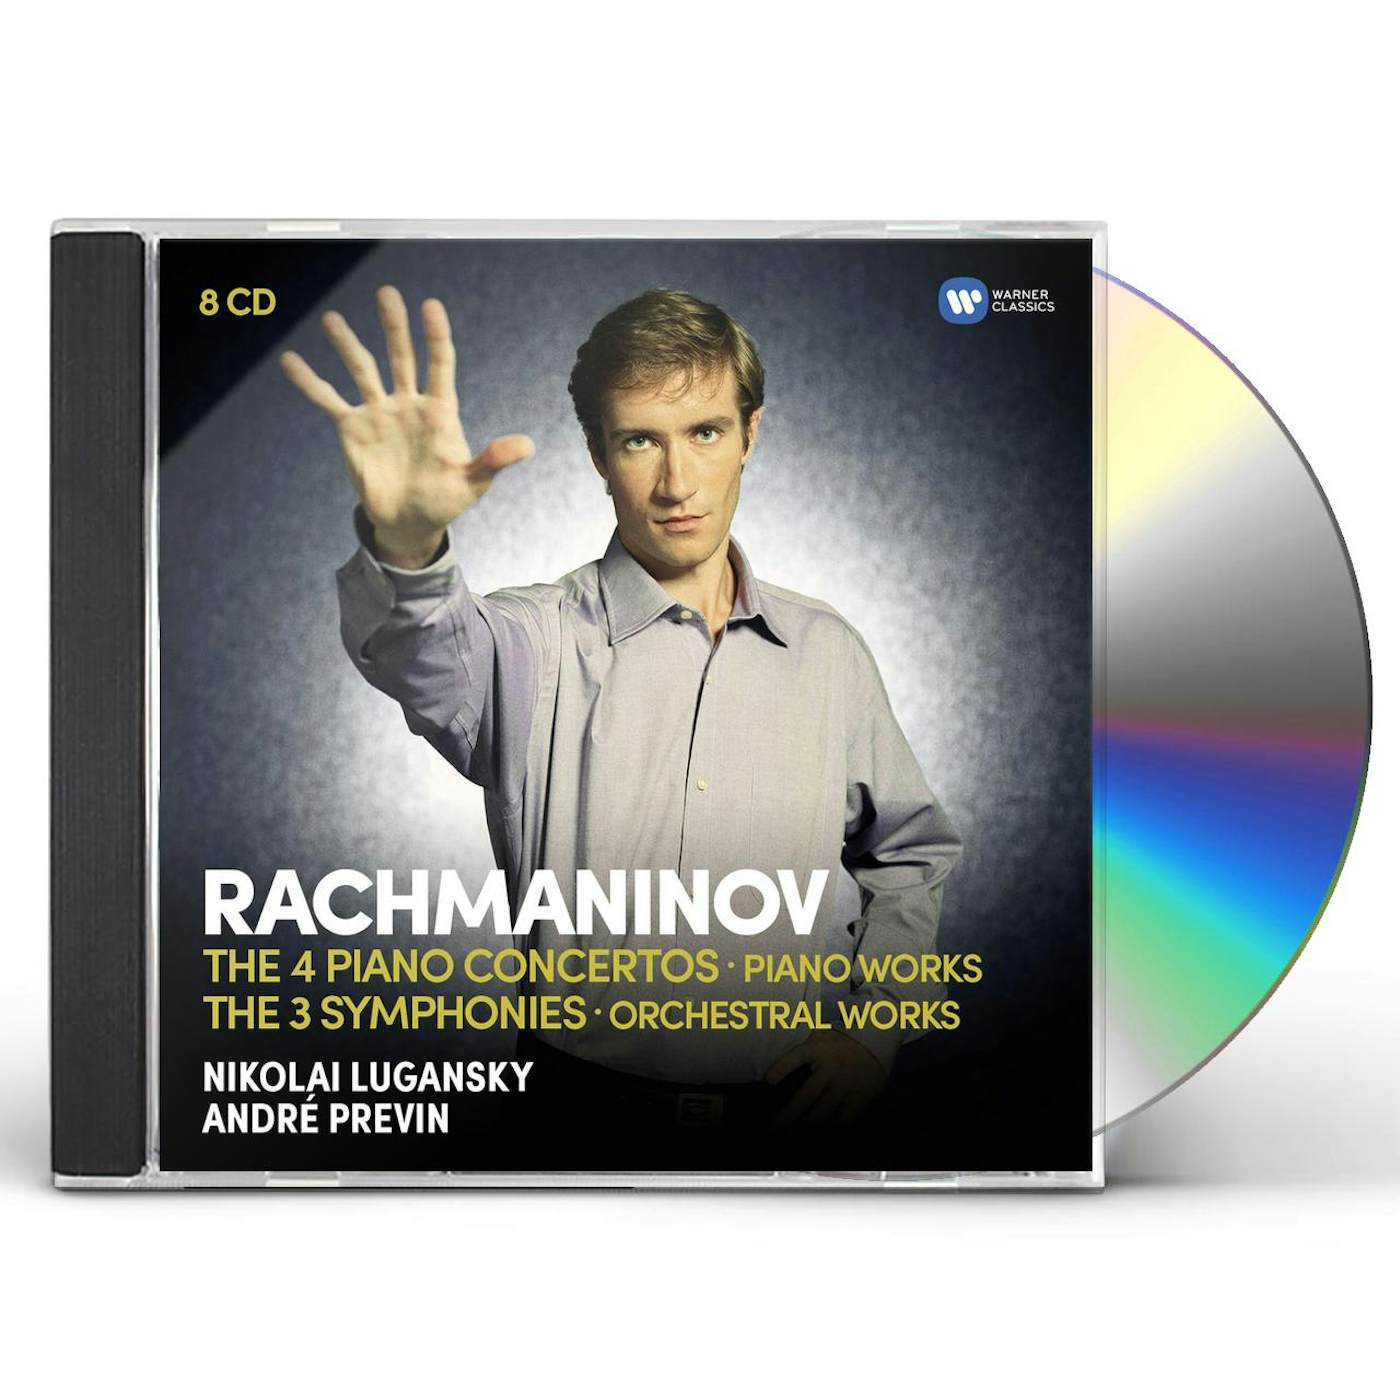 Nikolai Lugansky RACHMANINOV: PIANO CONCERTOS THE SYMPHONIES (7CD) CD